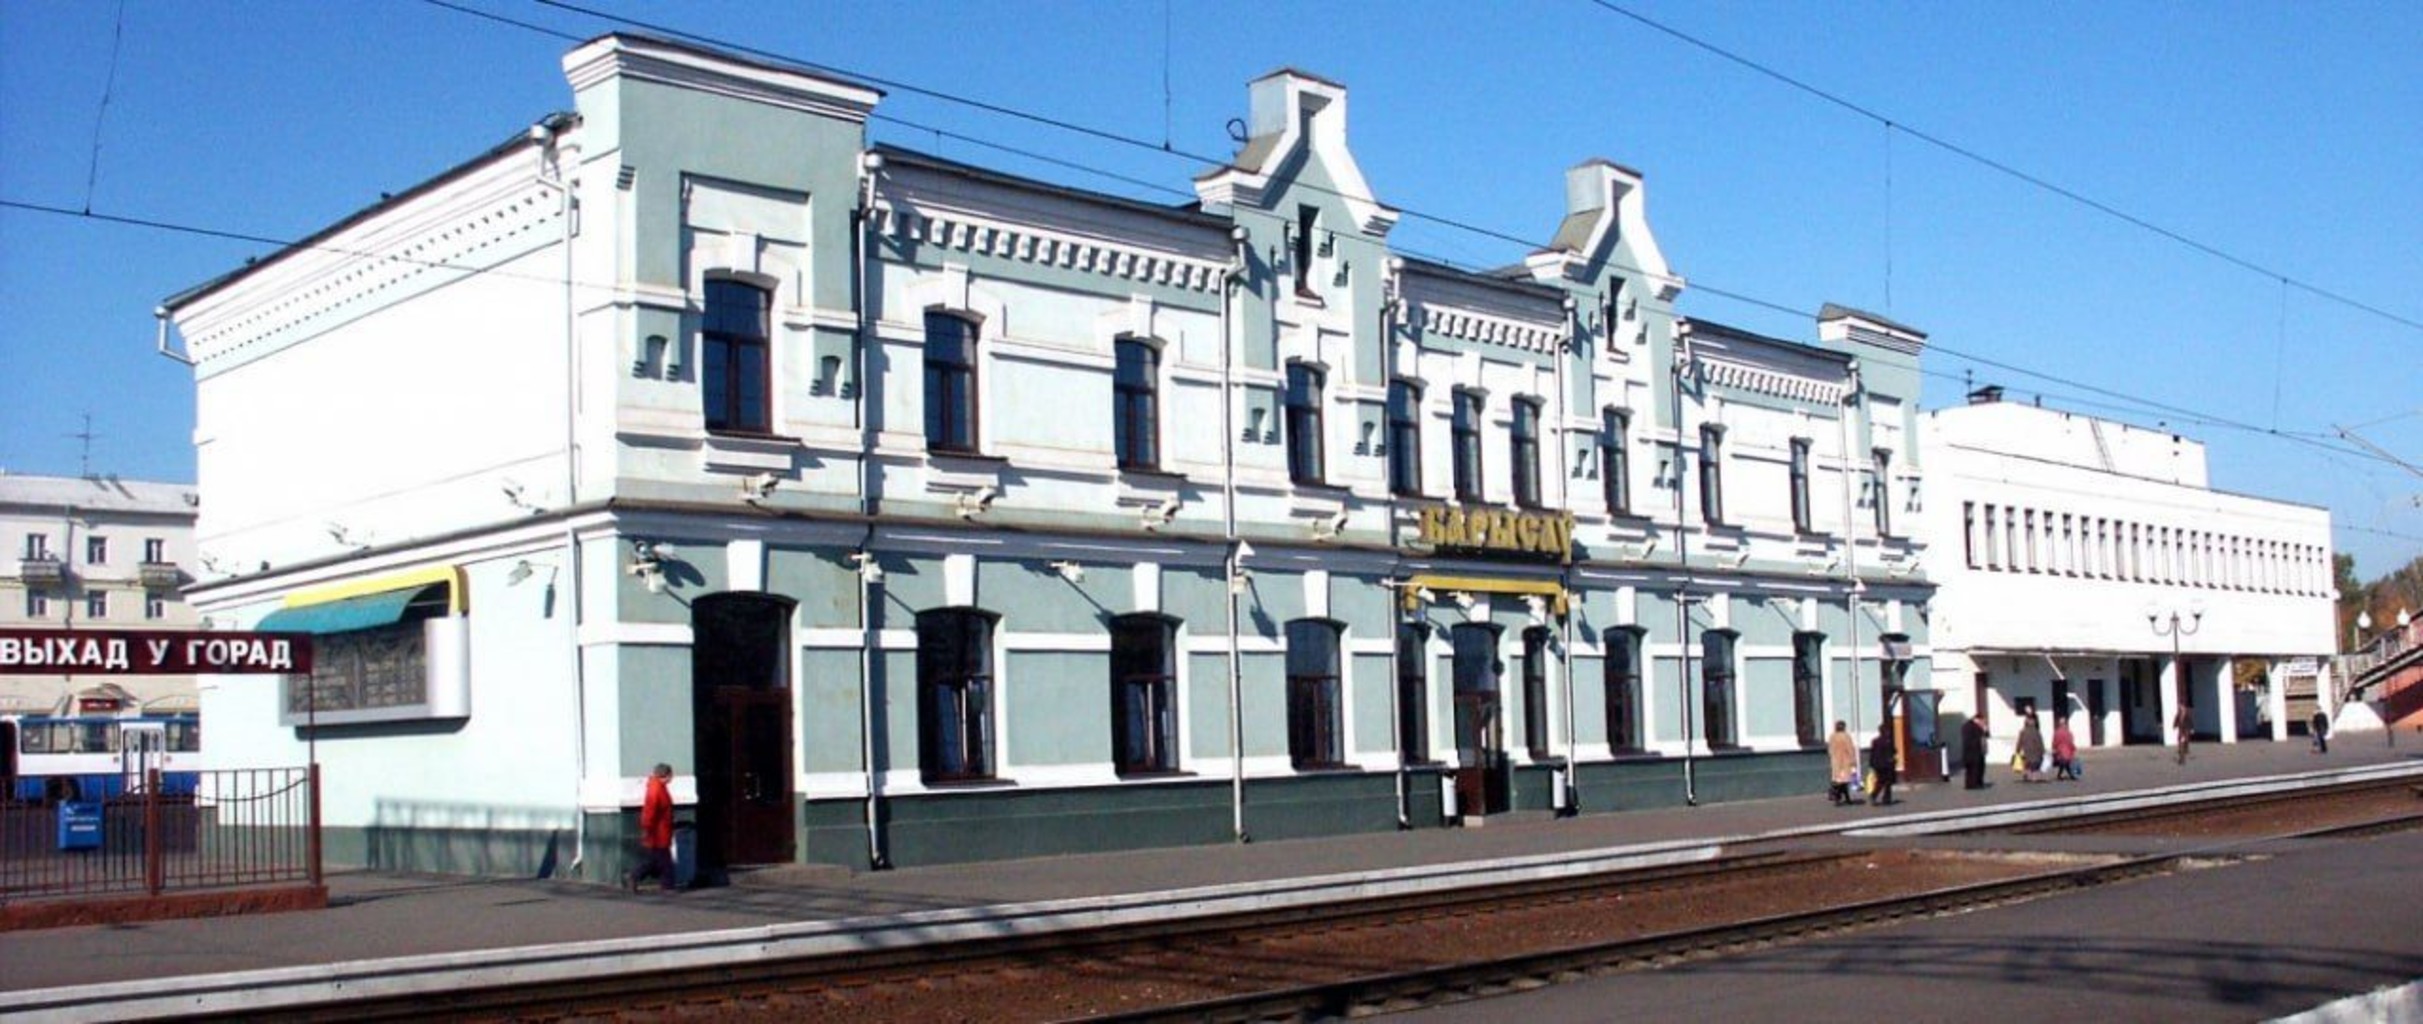 Железнодорожный вокзал Борисов